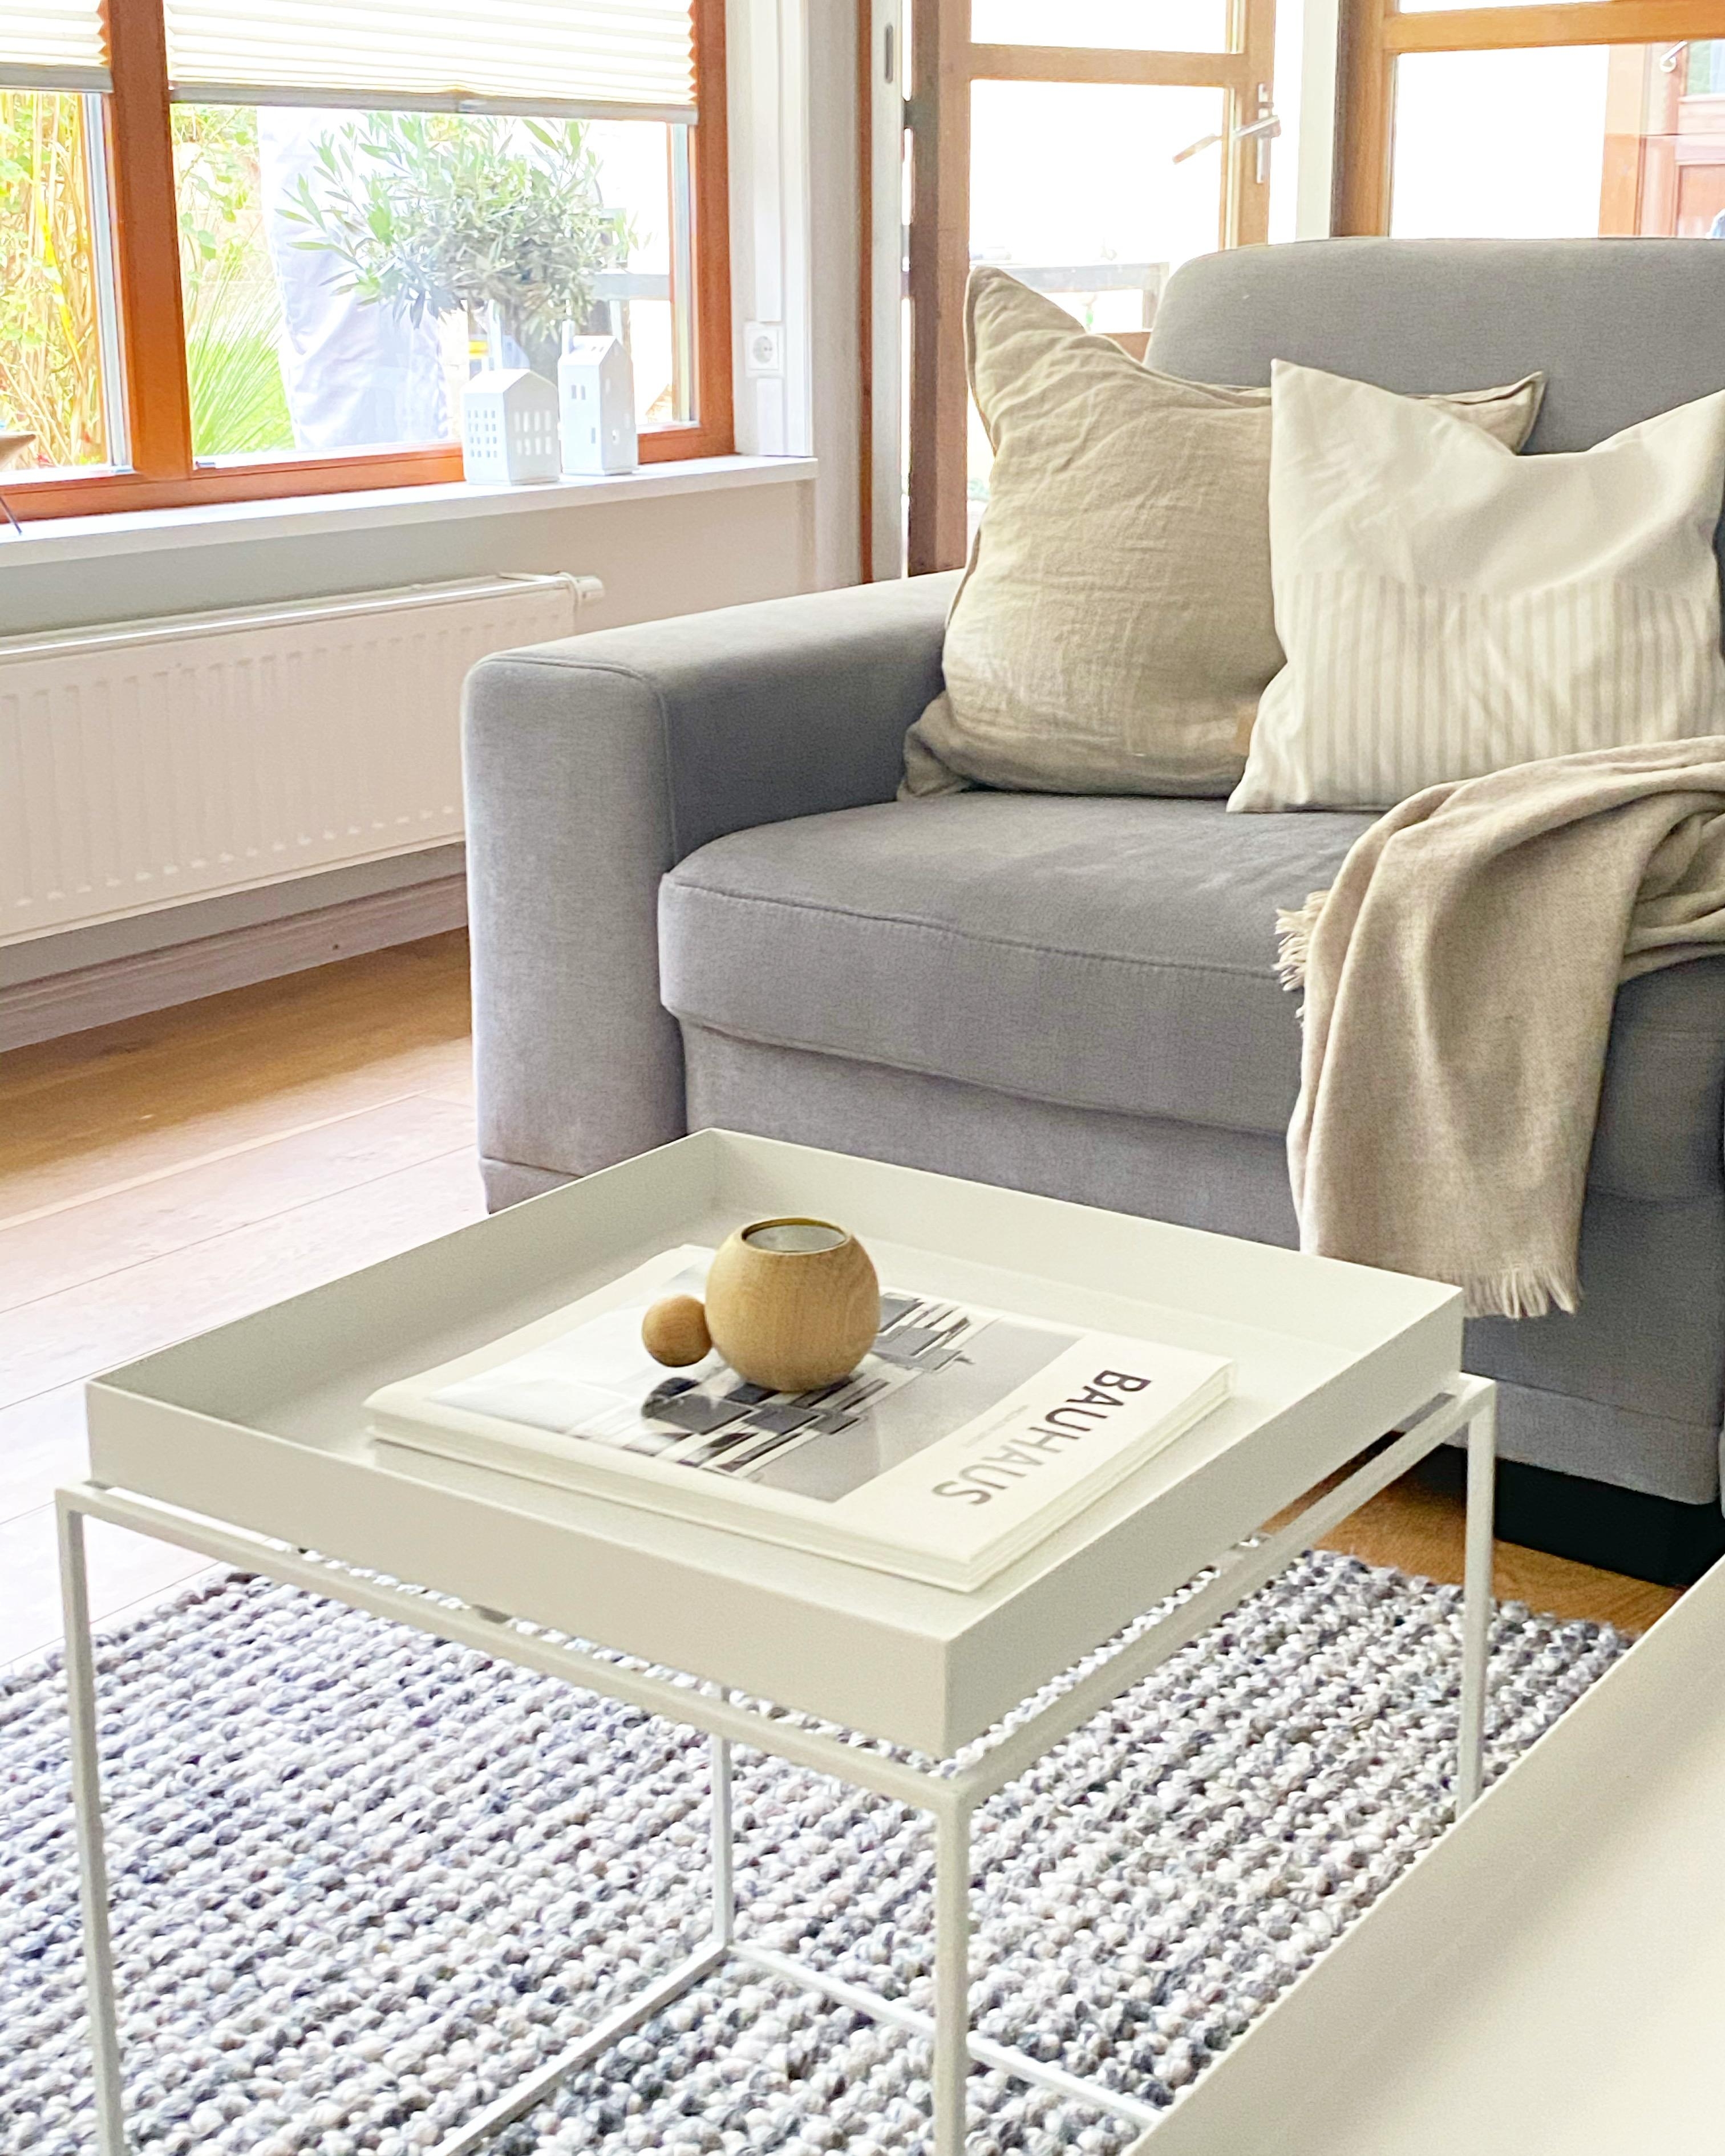 #sitzecke #livingchallenge #wohnzimmer #couchtisch #sofa #holzhaus #lieblingsplatz